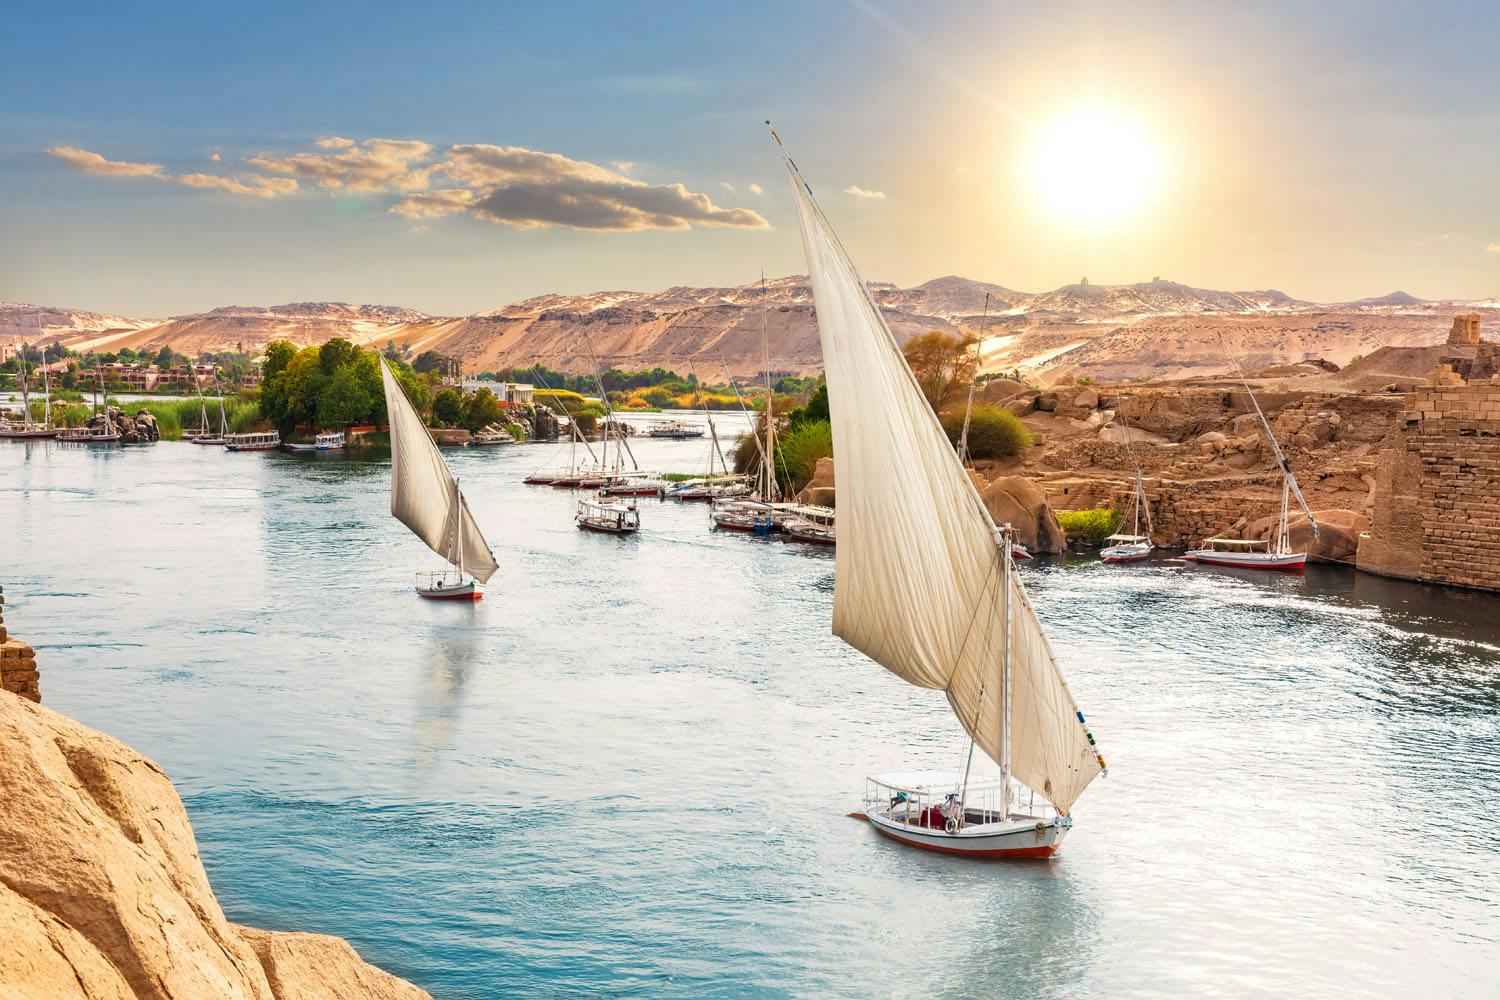 Aswan - Sailboats in Nile